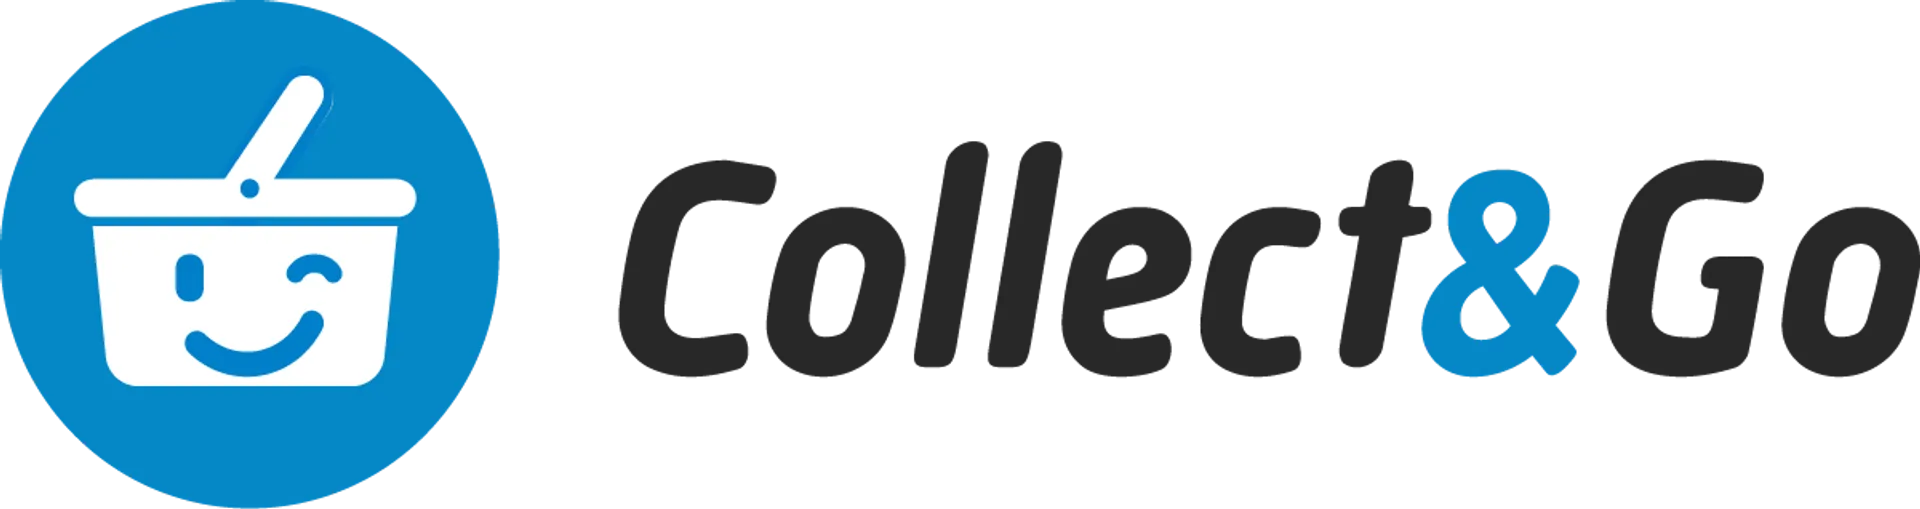 COLLECT & GO logo